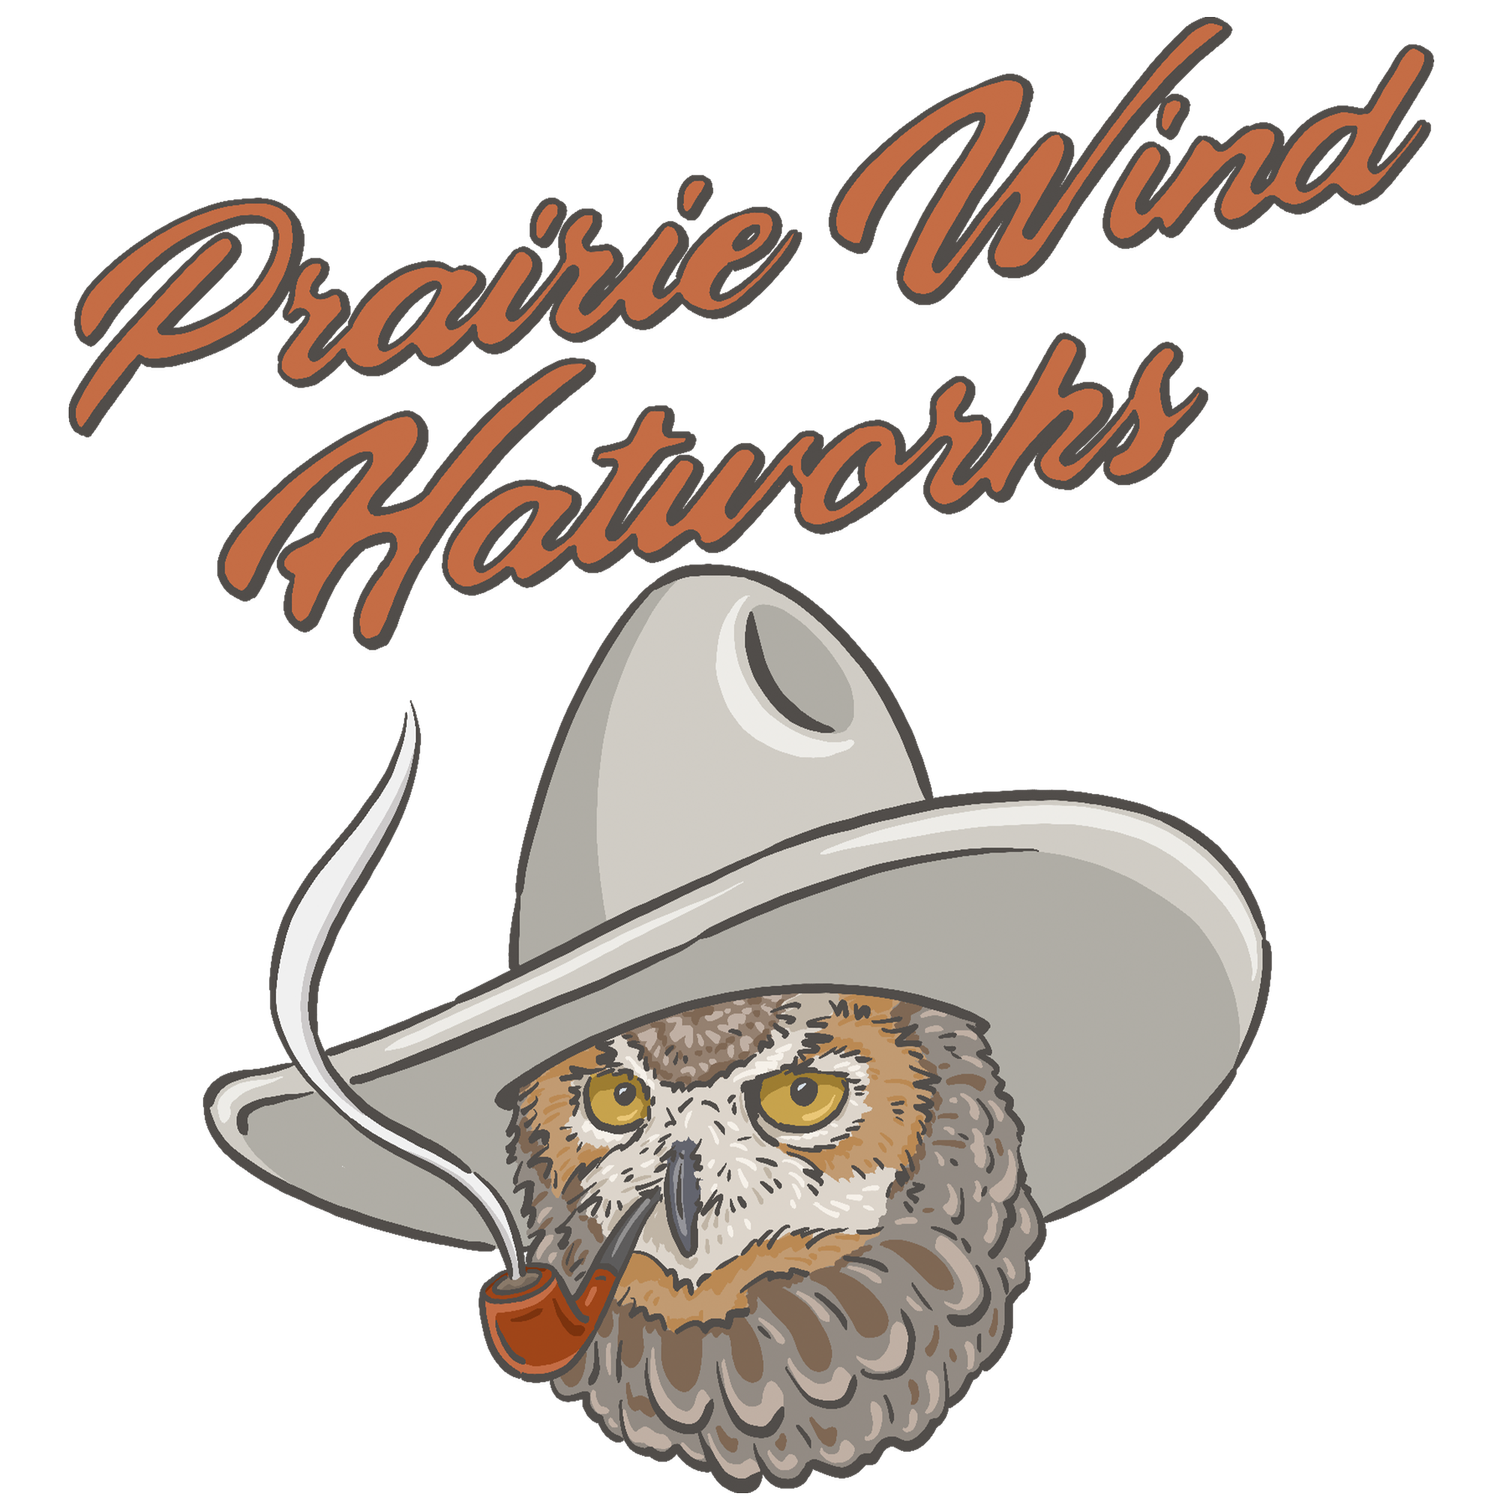 Prairie Wind Hatworks